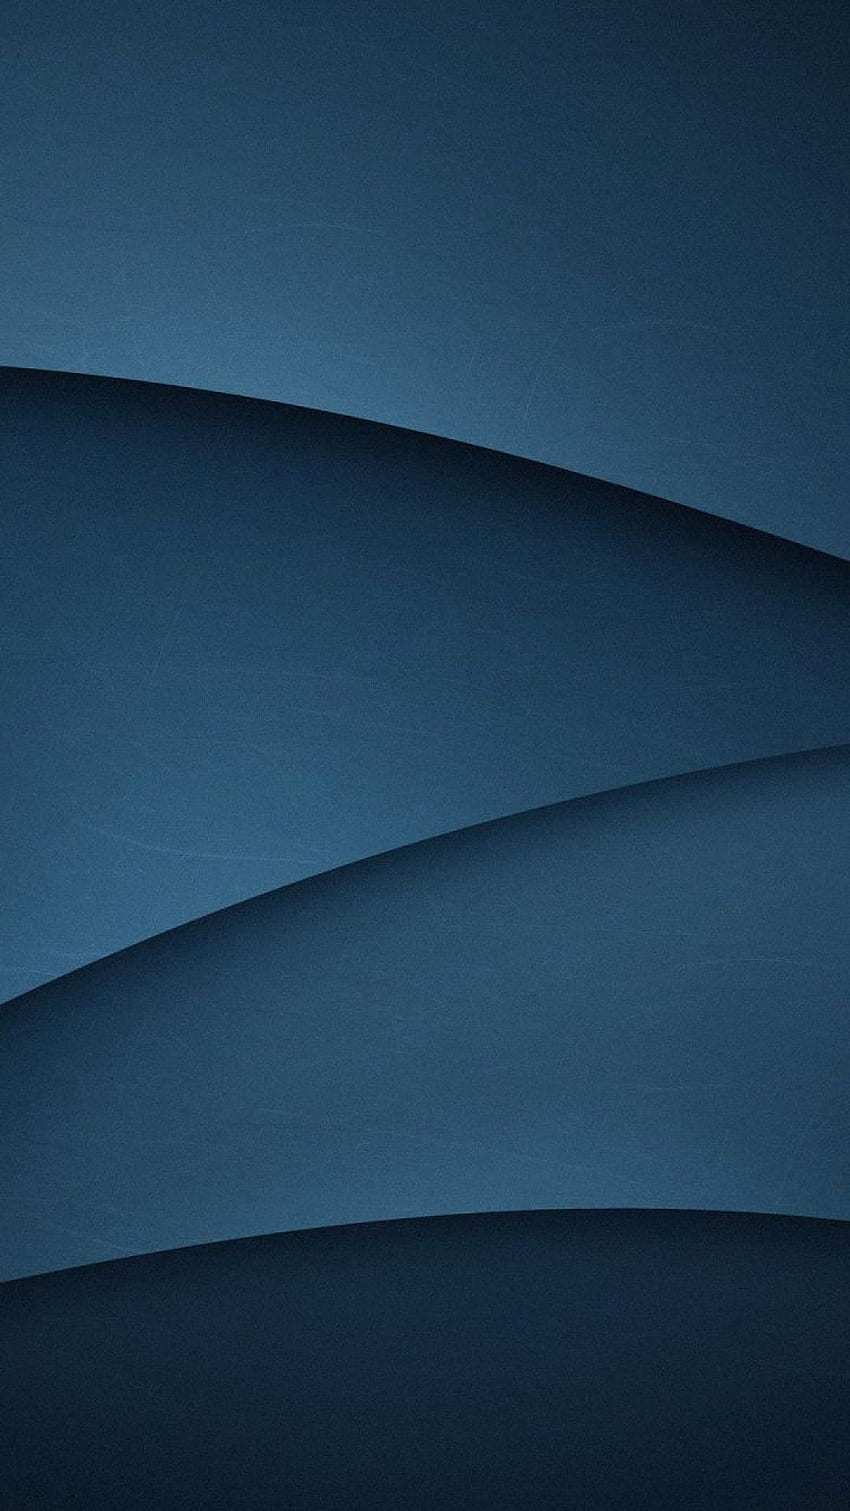 ��70 ダークブルー, グラデーション, 抽象的, 波の流れ, ミニマリスト, - Android / iPhone 背景 (png / jpg) (2022), ダークブルー モバイル HD電話の壁紙